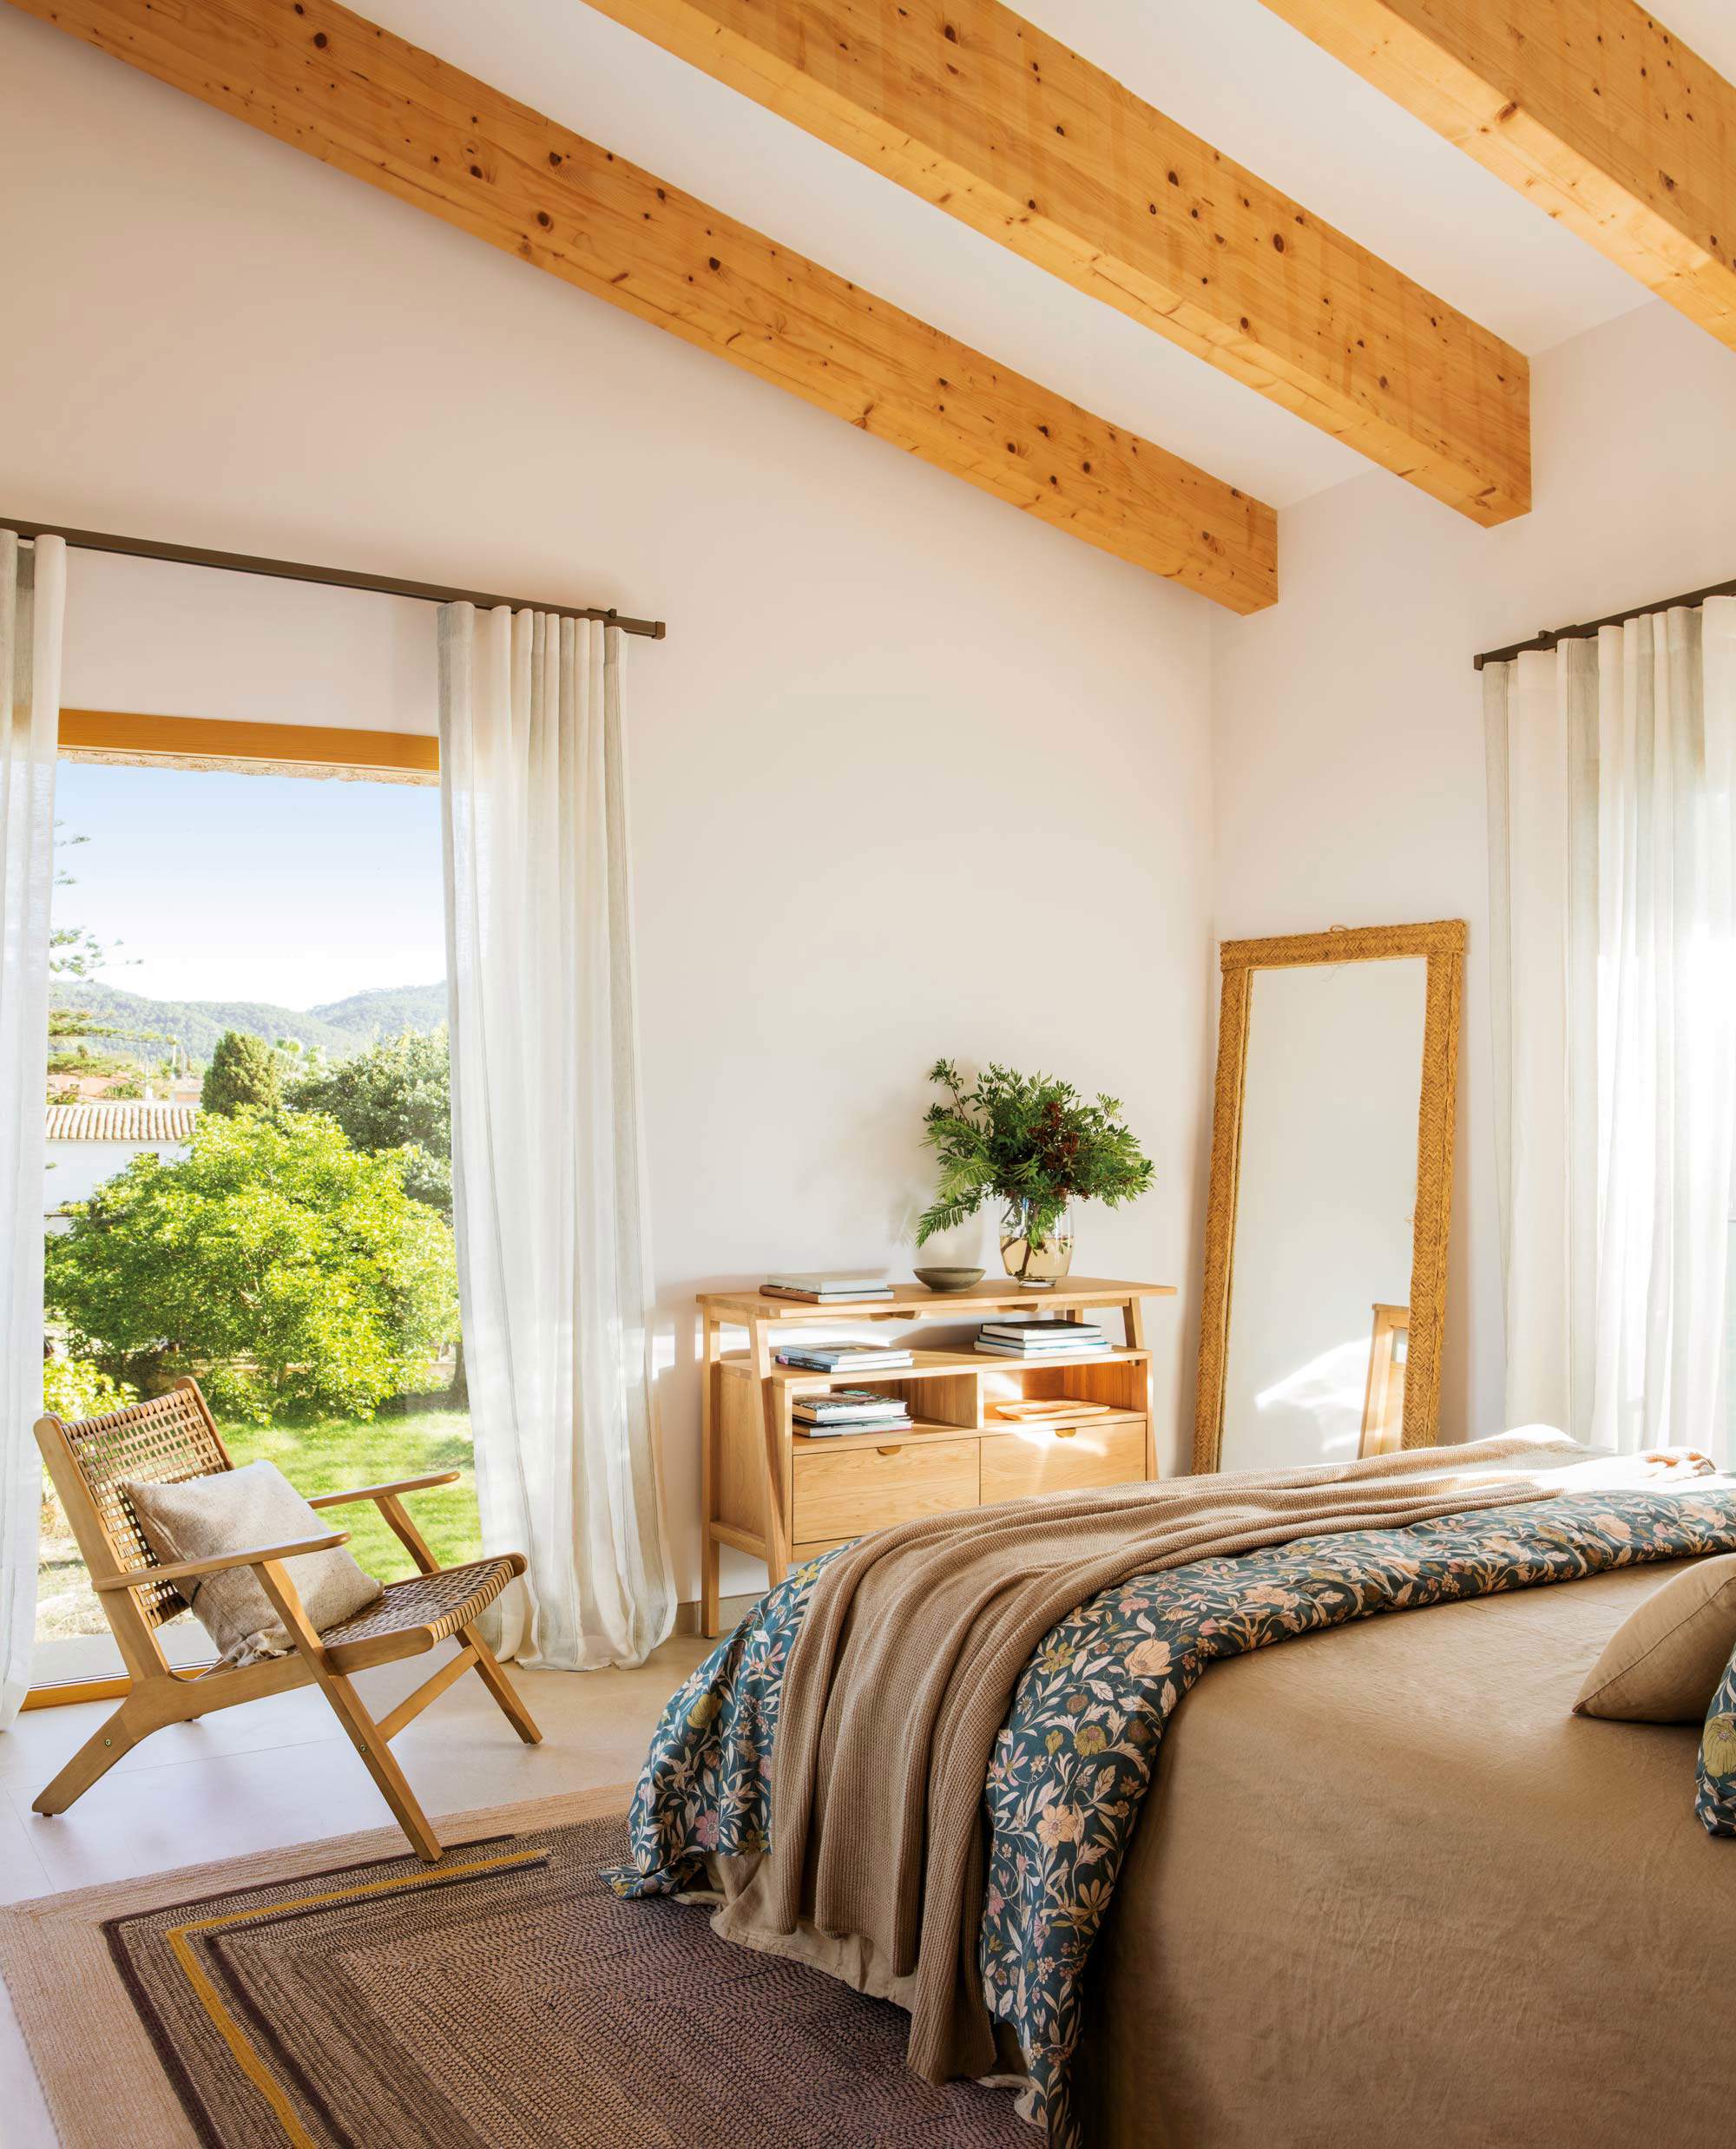 Dormitorio de verano con techo de vigas de madera y acceso al jardin